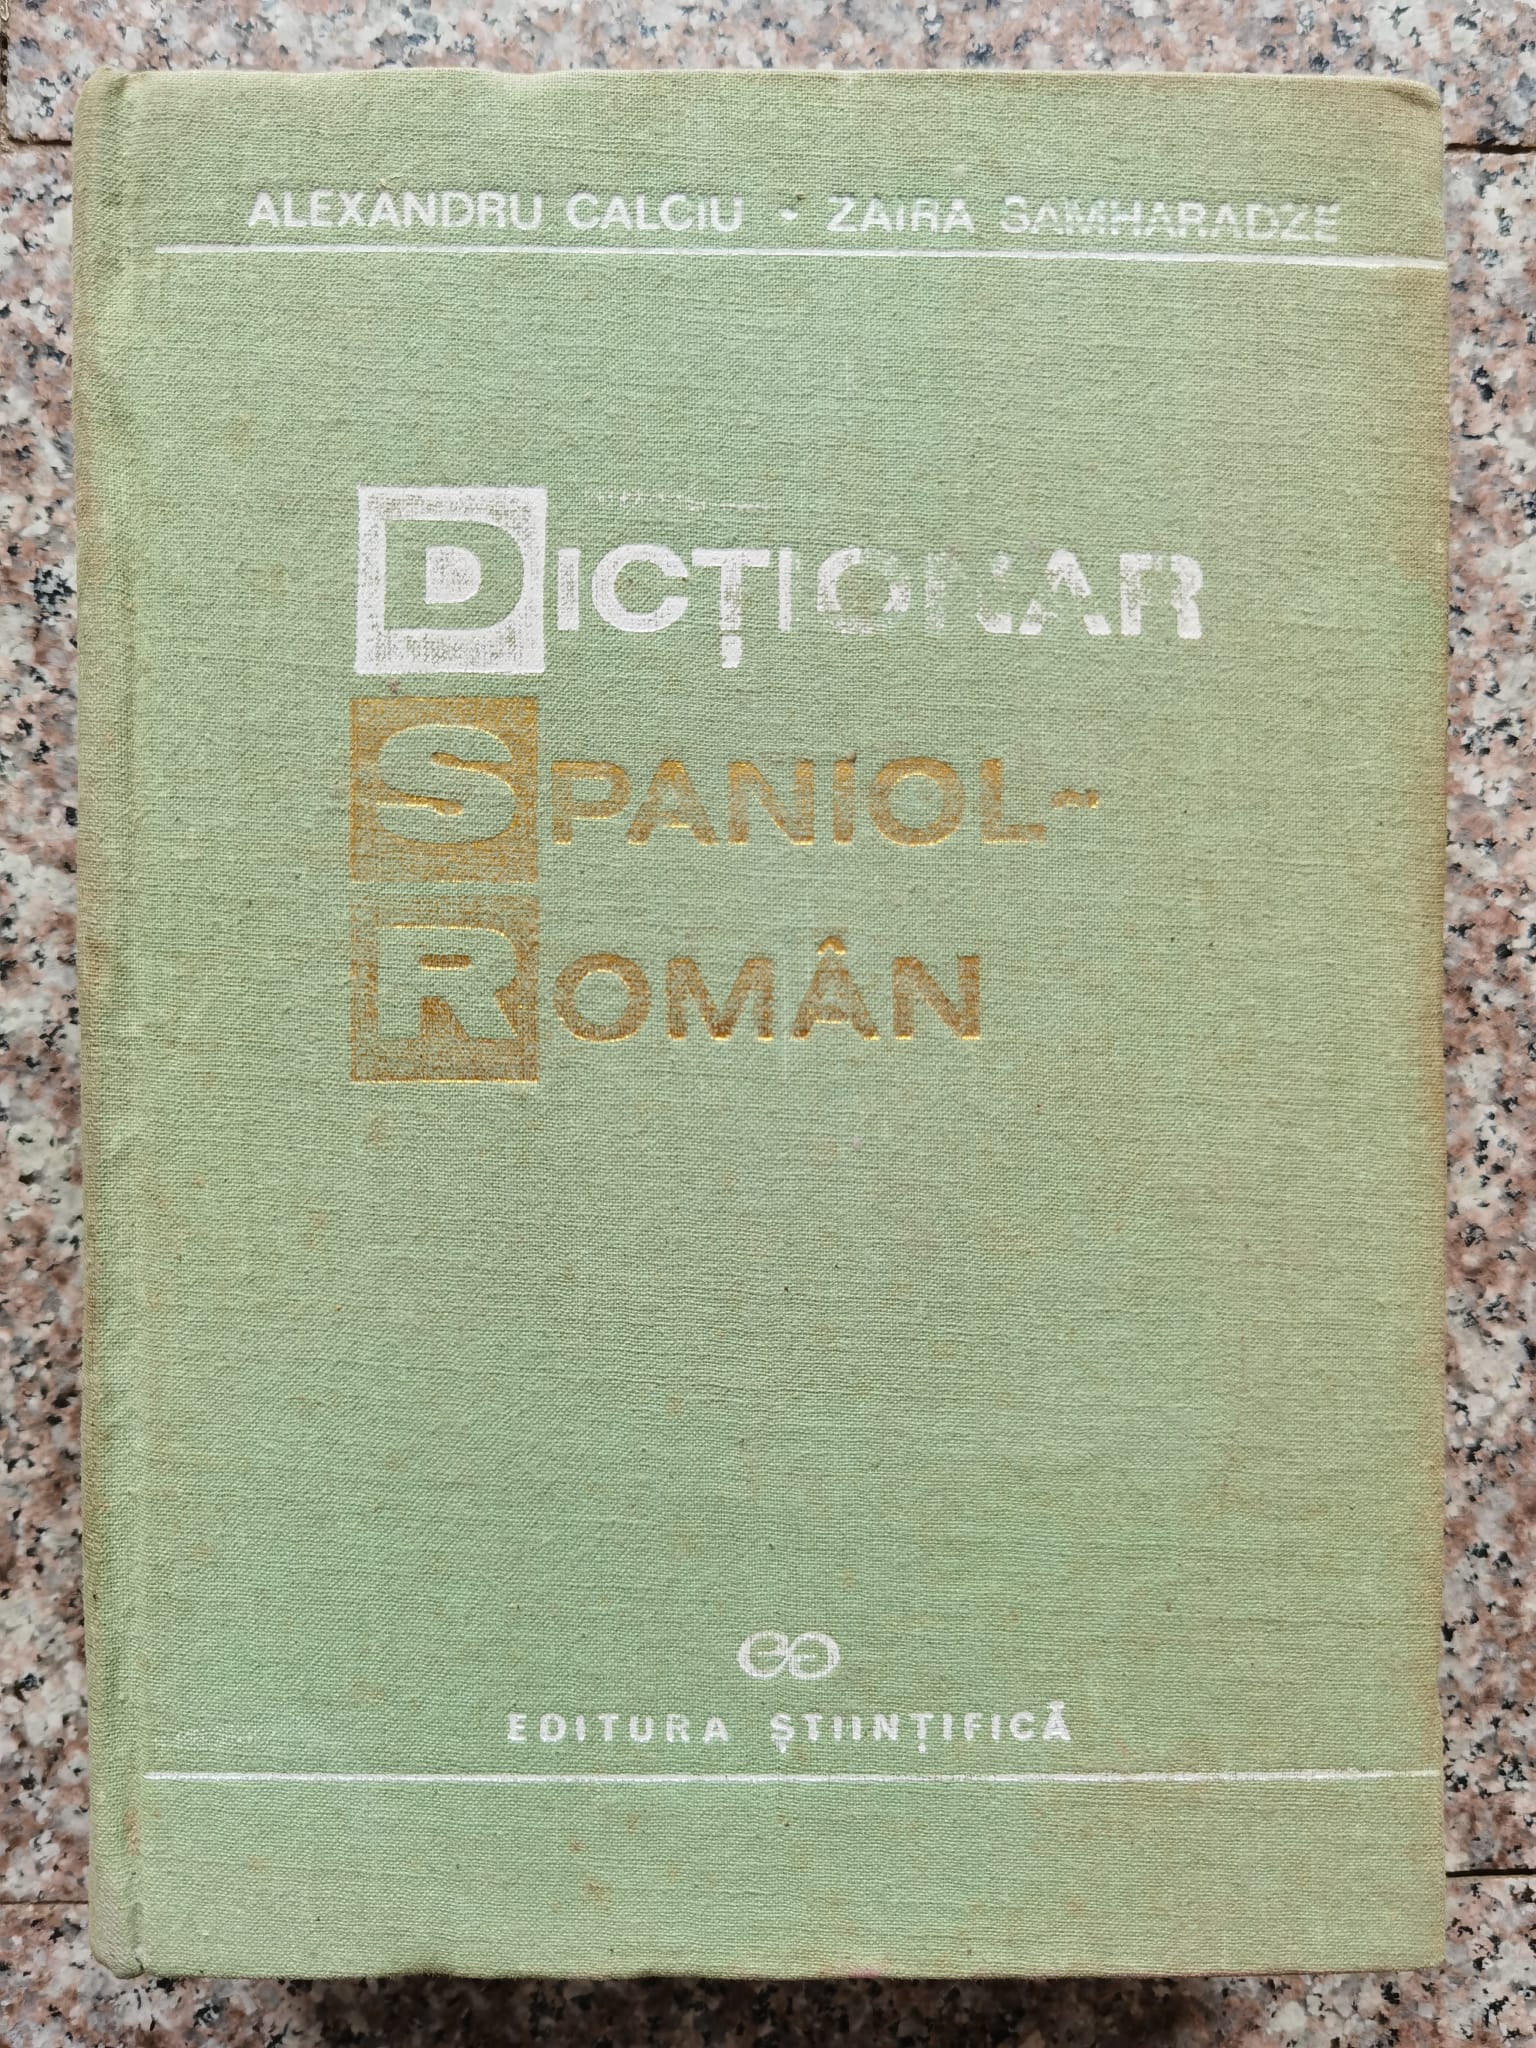 dictionar spaniol-roman                                                                              al. calciu z. samharadze                                                                            